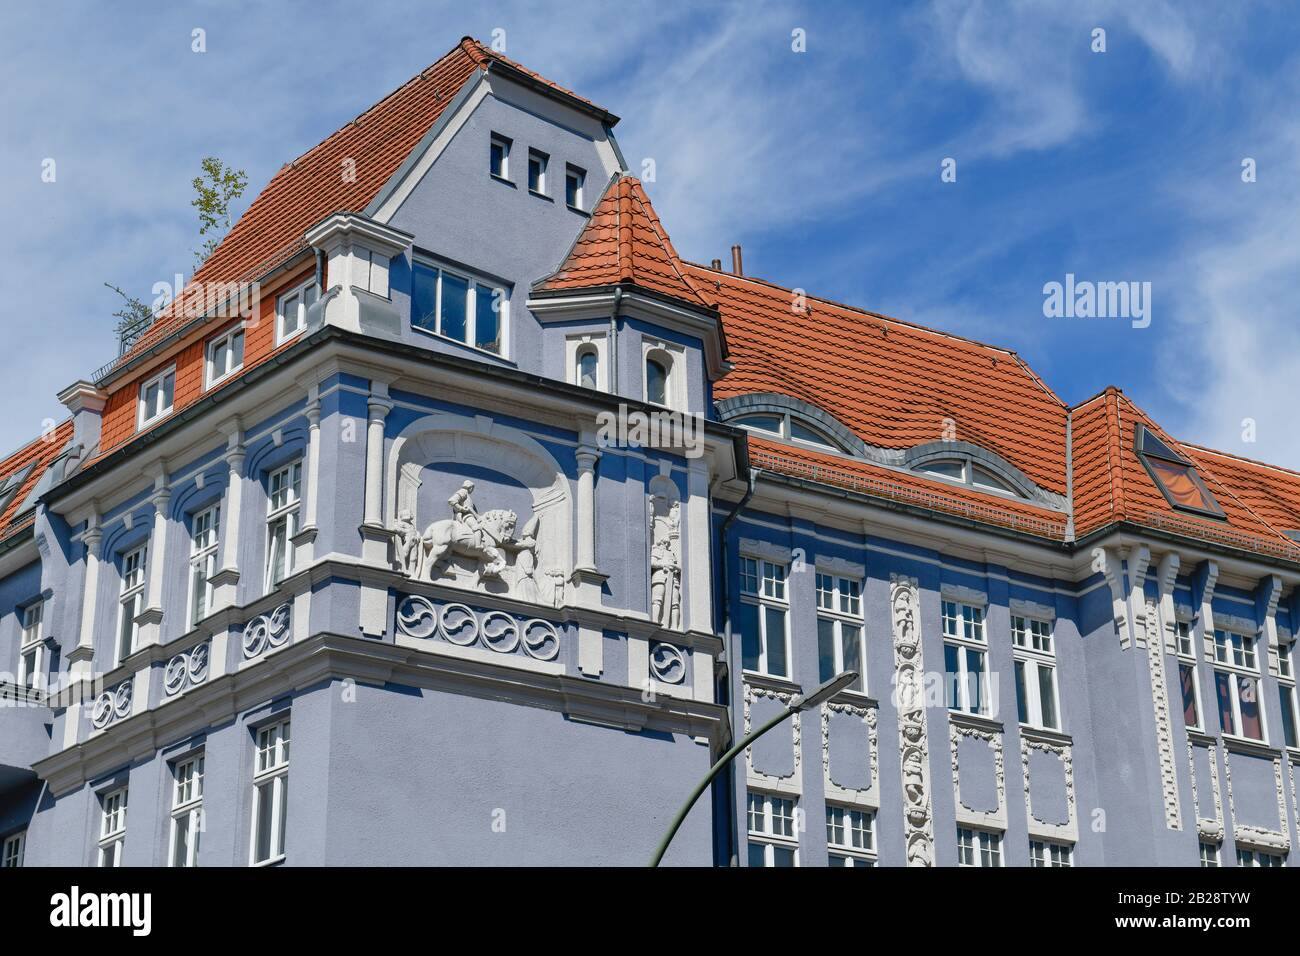 Altbau, Klosterstraße, Spandau, Berlin, Deutschland Stock Photo